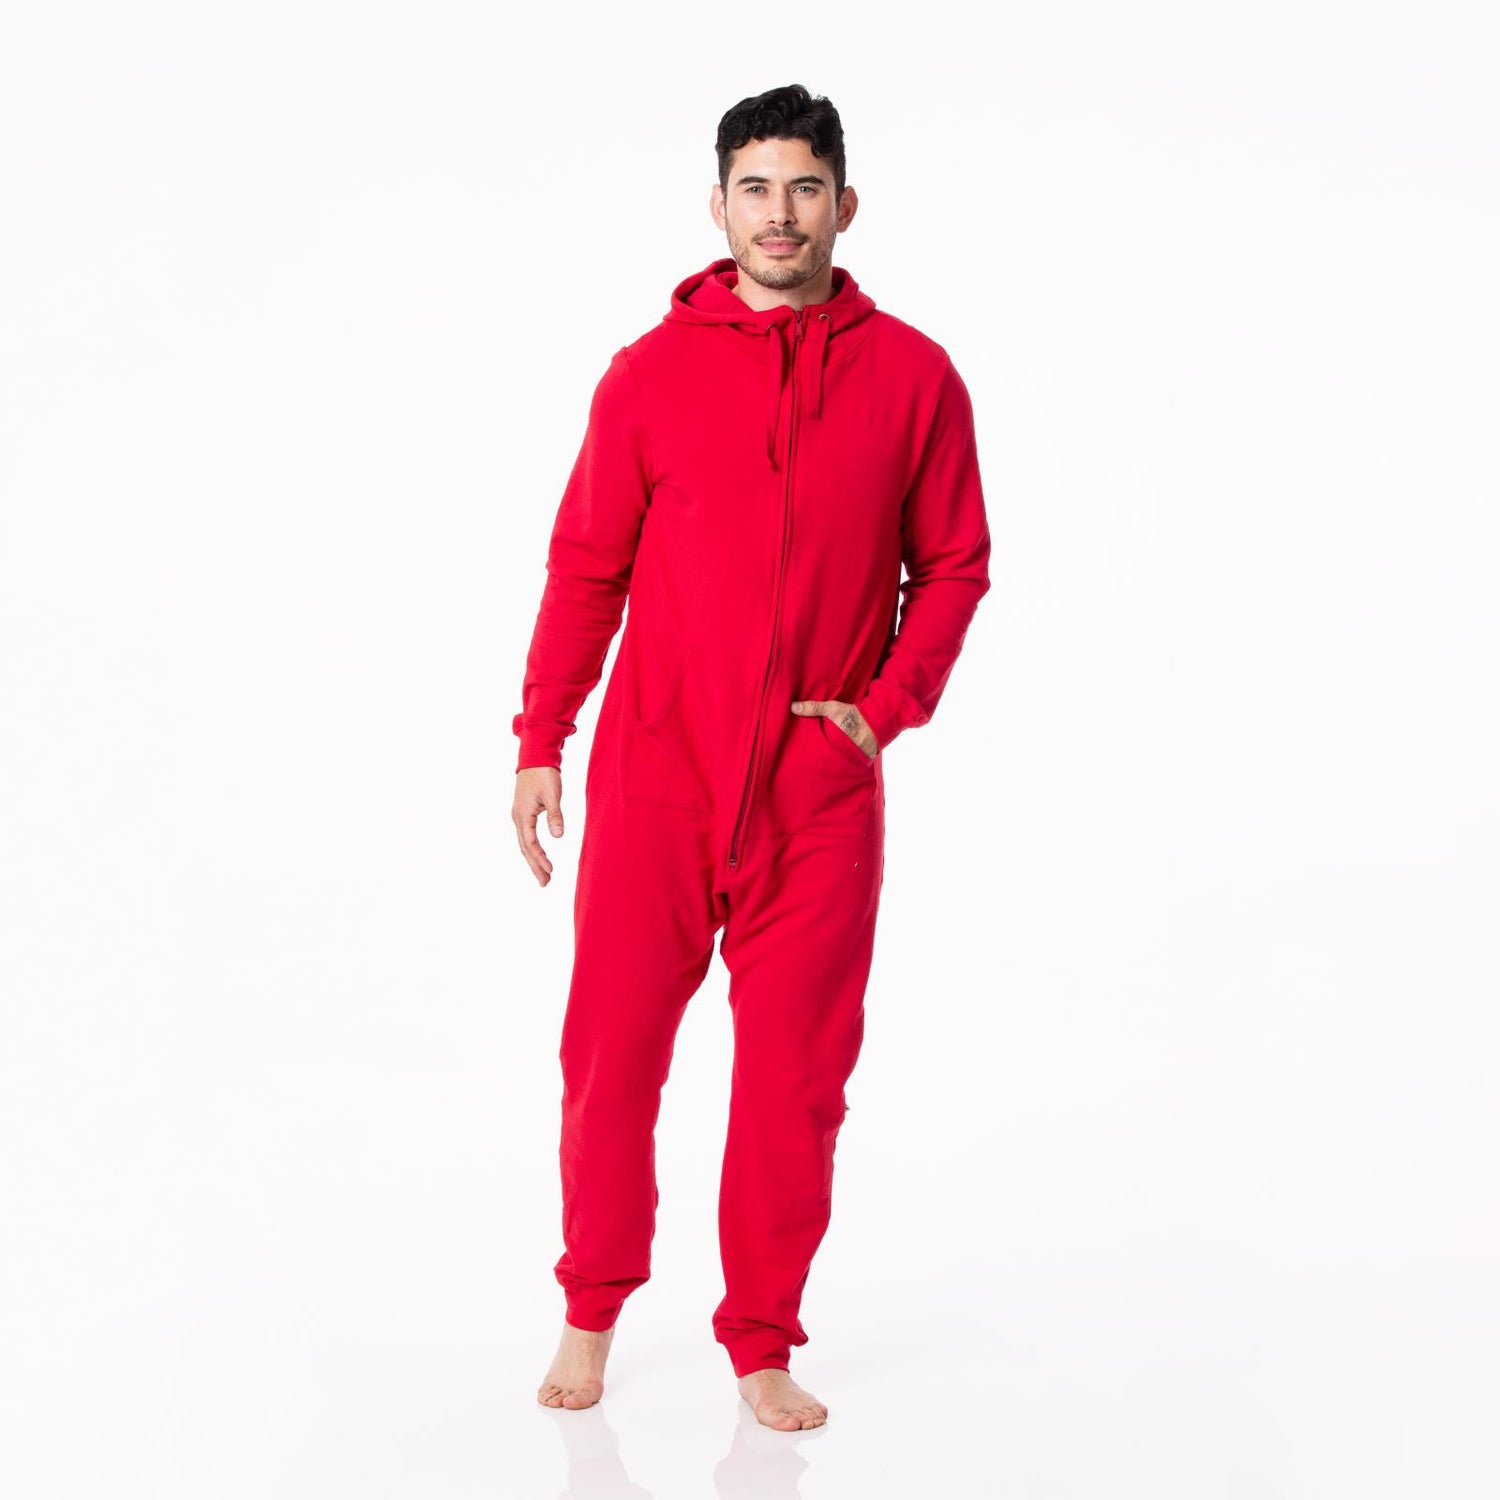 Adult Fleece Jumpsuit with Hood in Crimson